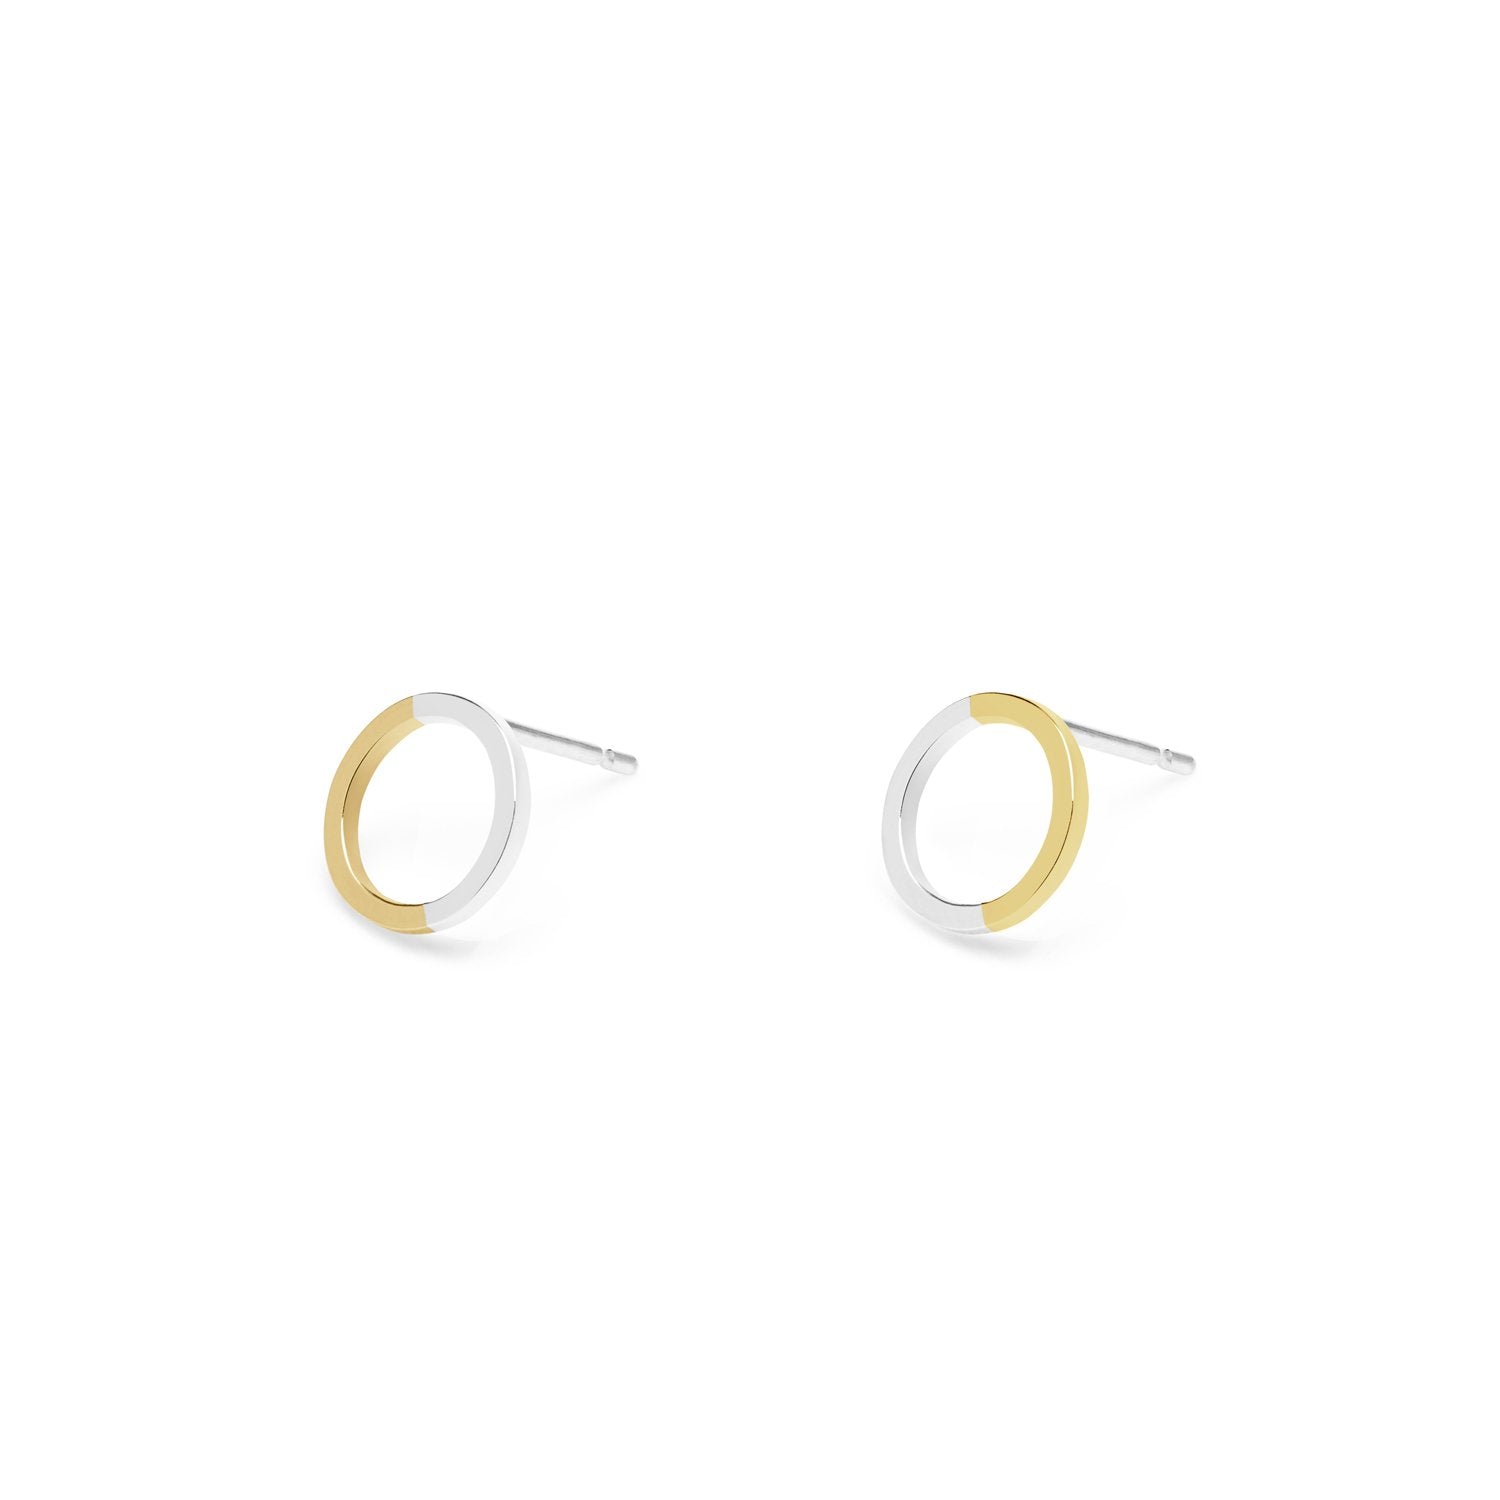 Two-tone Mini Circle Stud Earrings - 9k Yellow Gold & Silver - Myia Bonner Jewellery